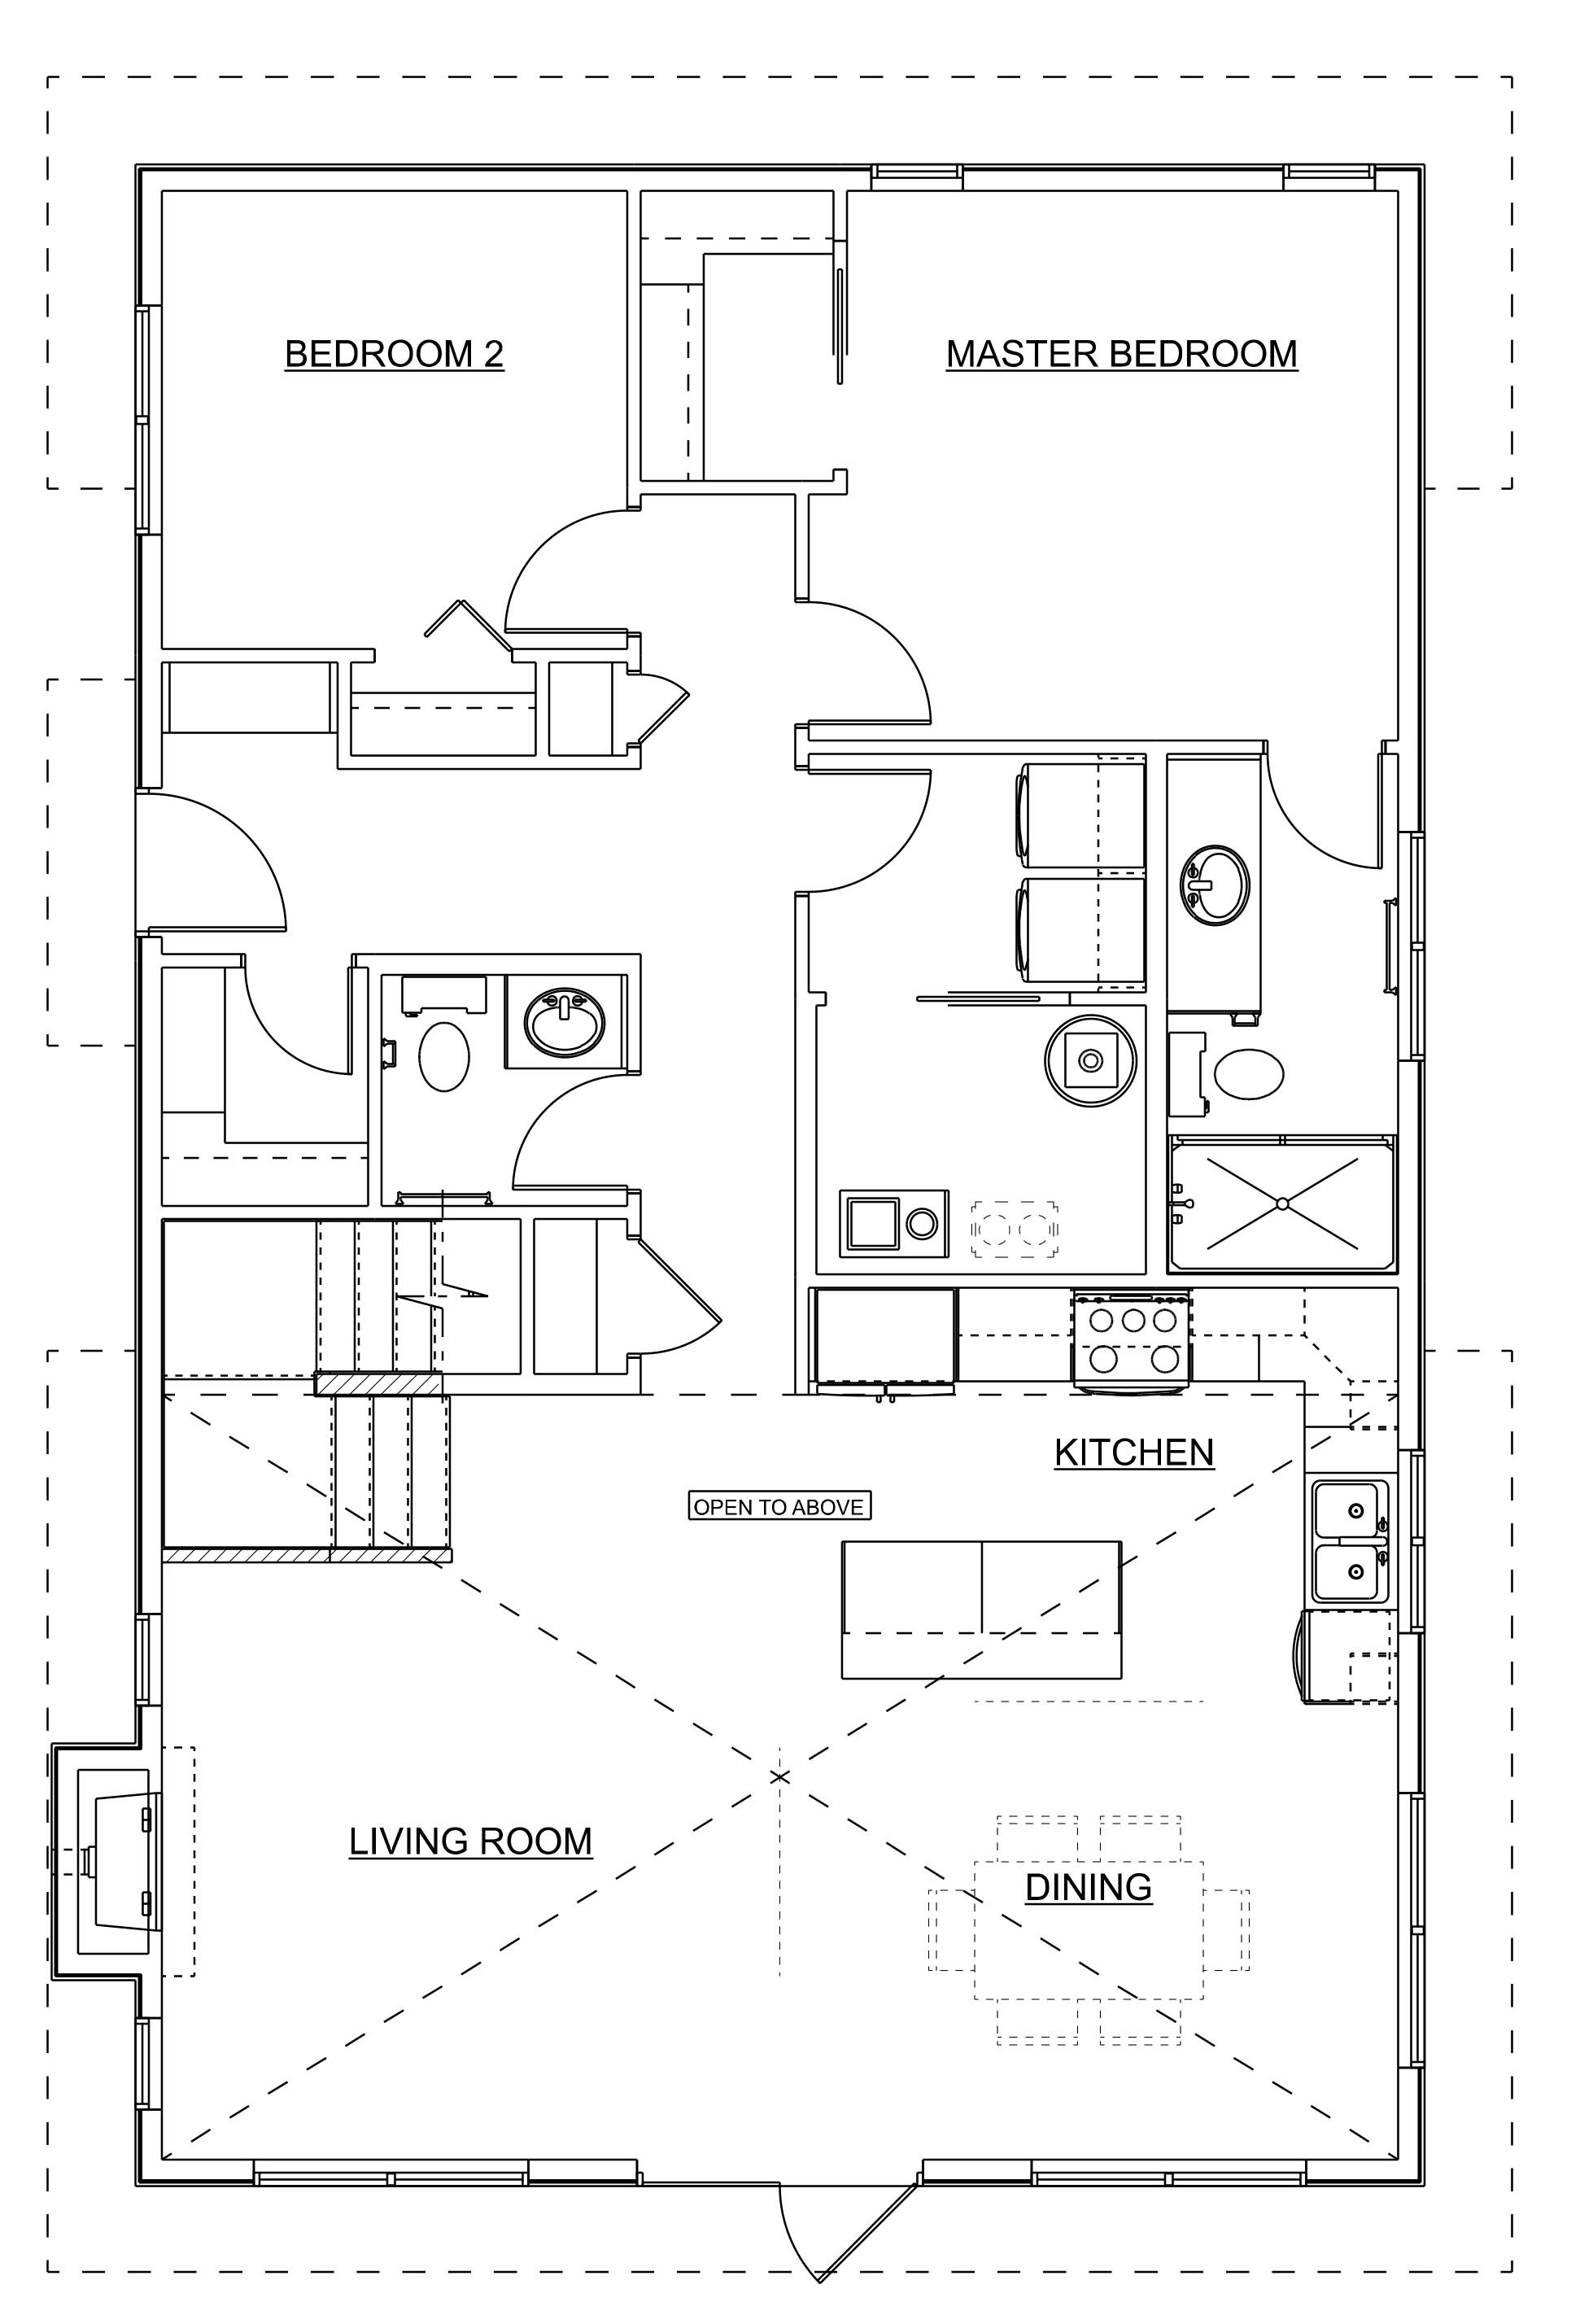 modular rtm house plan prefab homes nelson homes.jpg